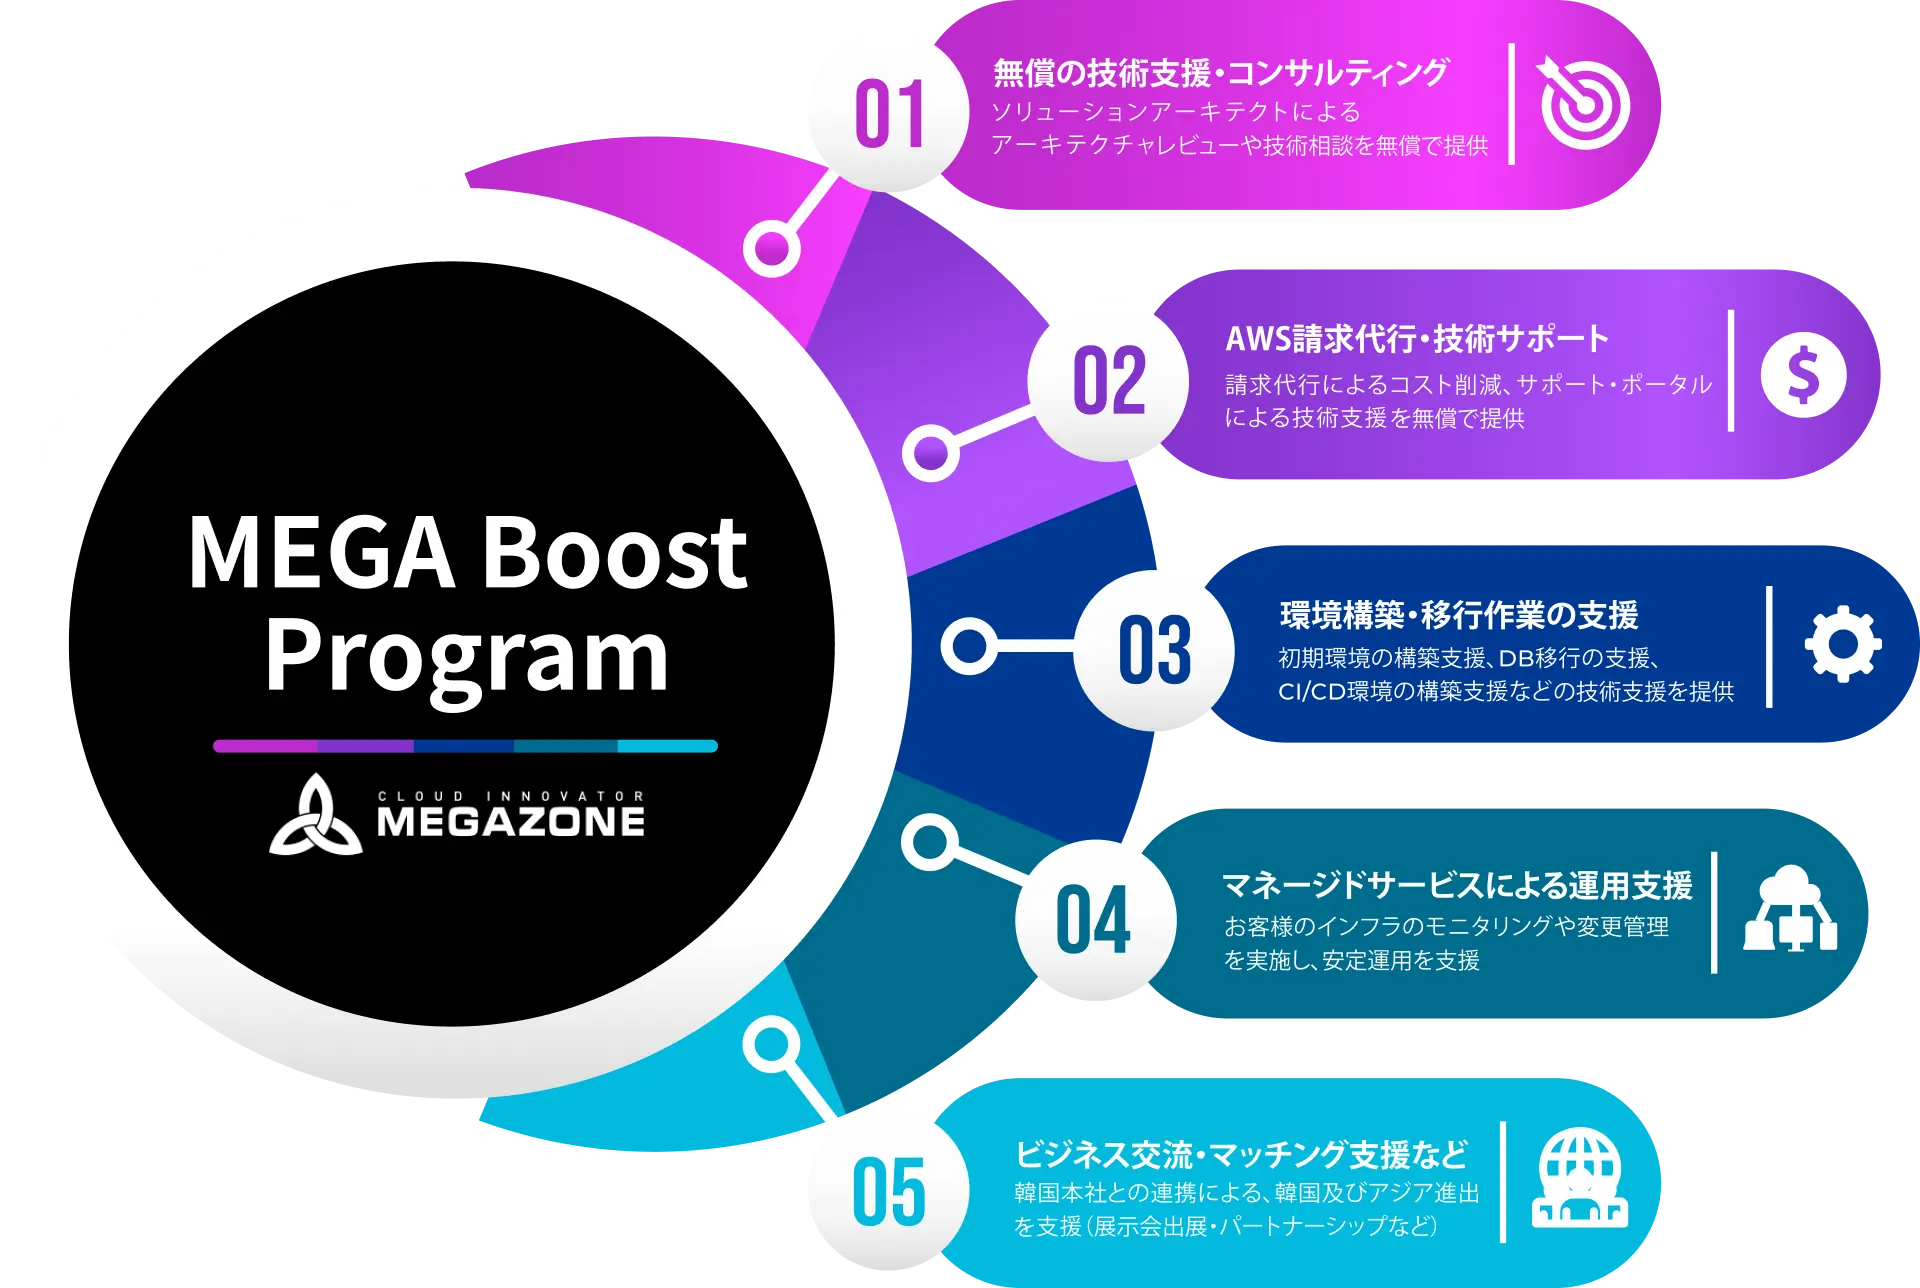 スタートアップの課題を解決するMEGA Boost Programの5つの特長